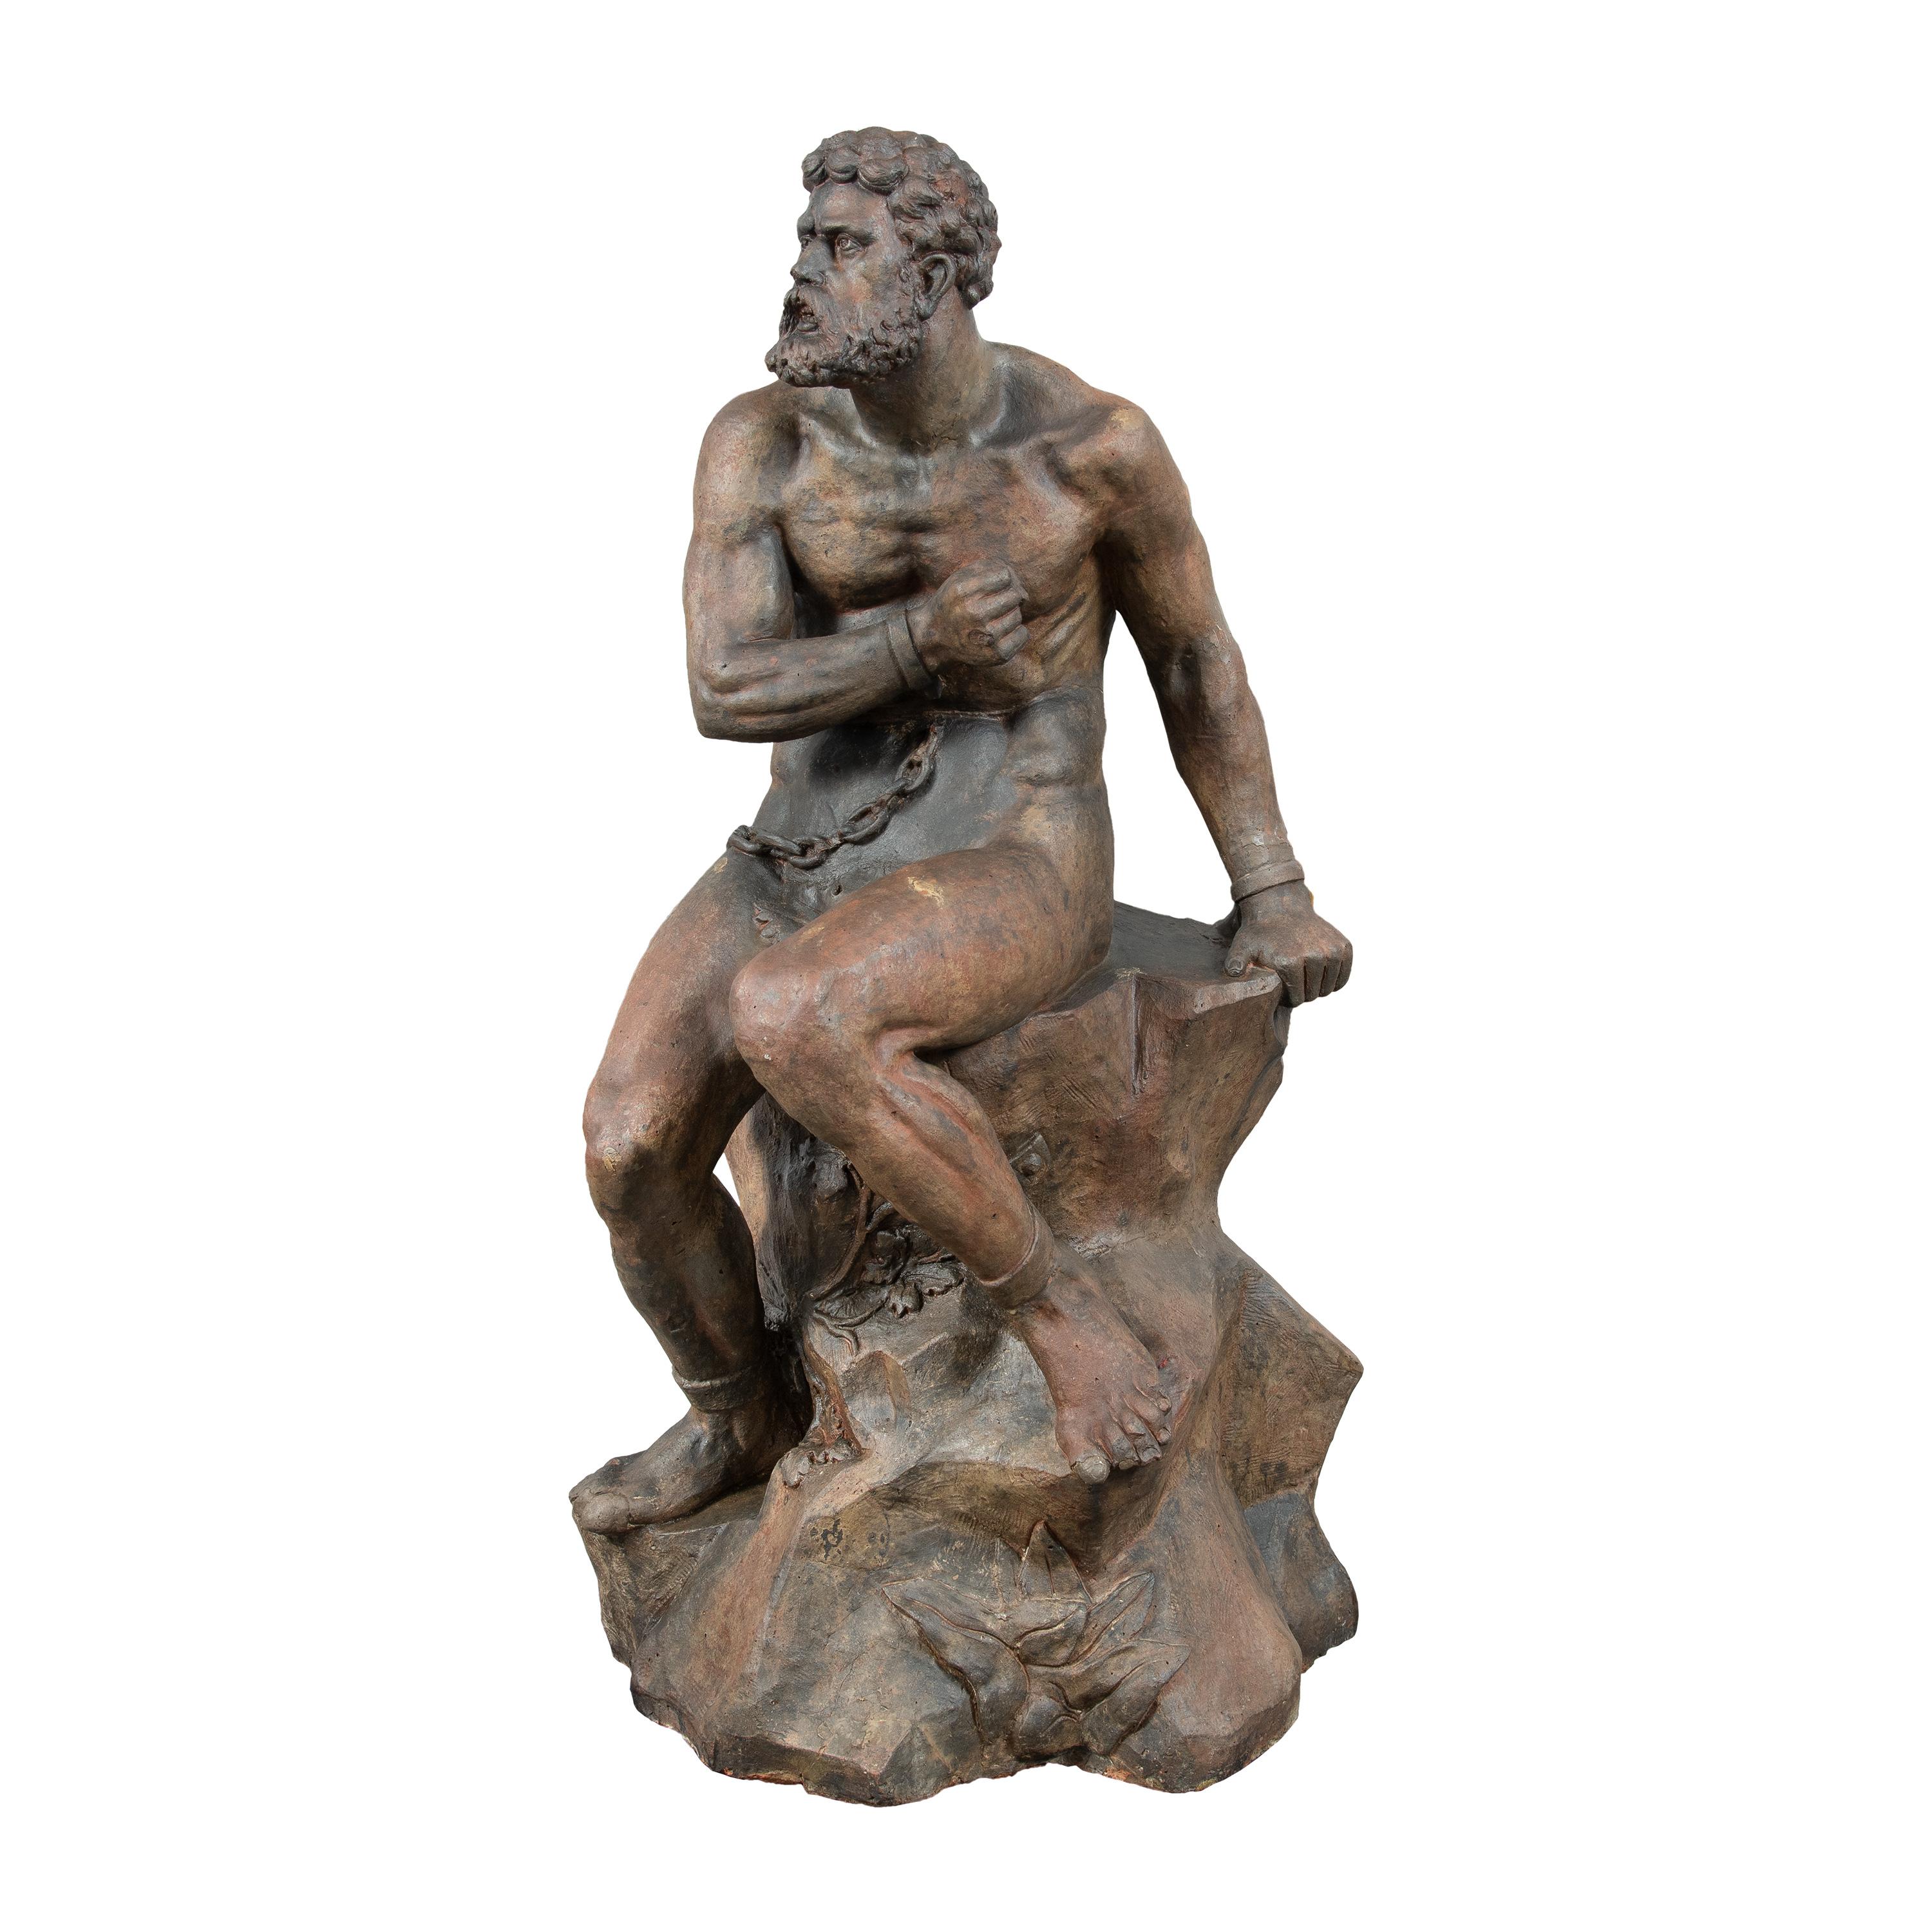 Baroque master sculptor - 18th century terracotta sculpture - Prometheus figure